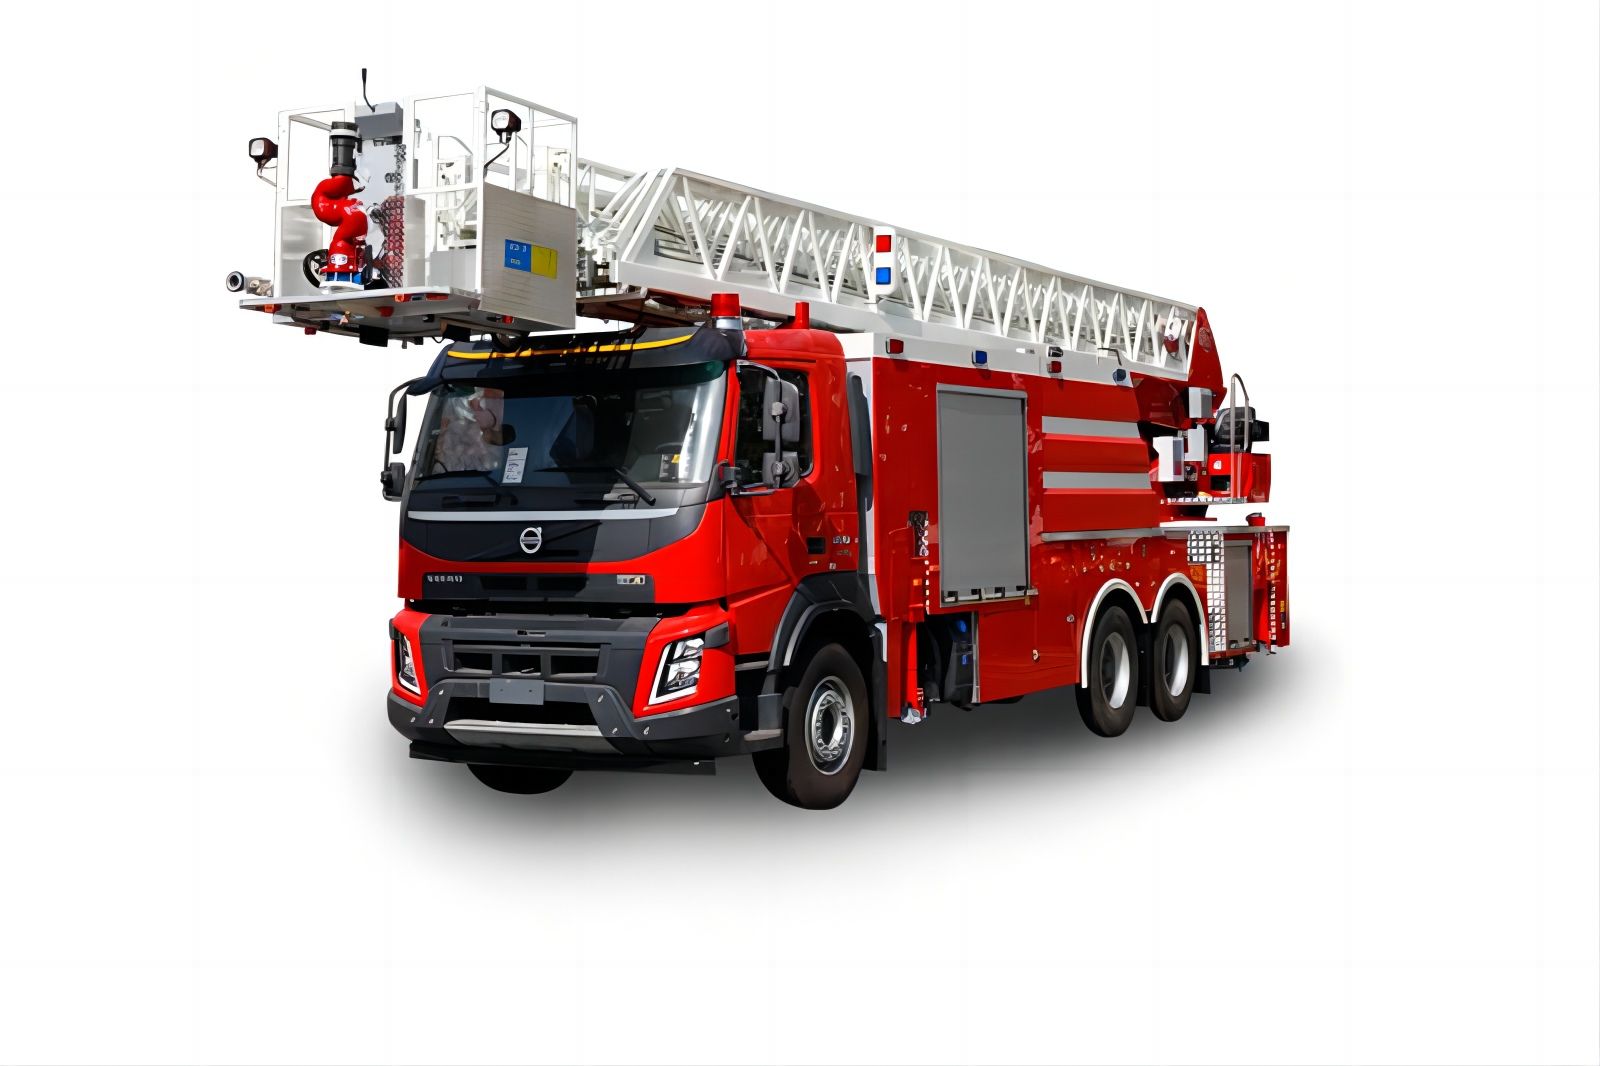  Volvo 53M Ladder Fire Truck